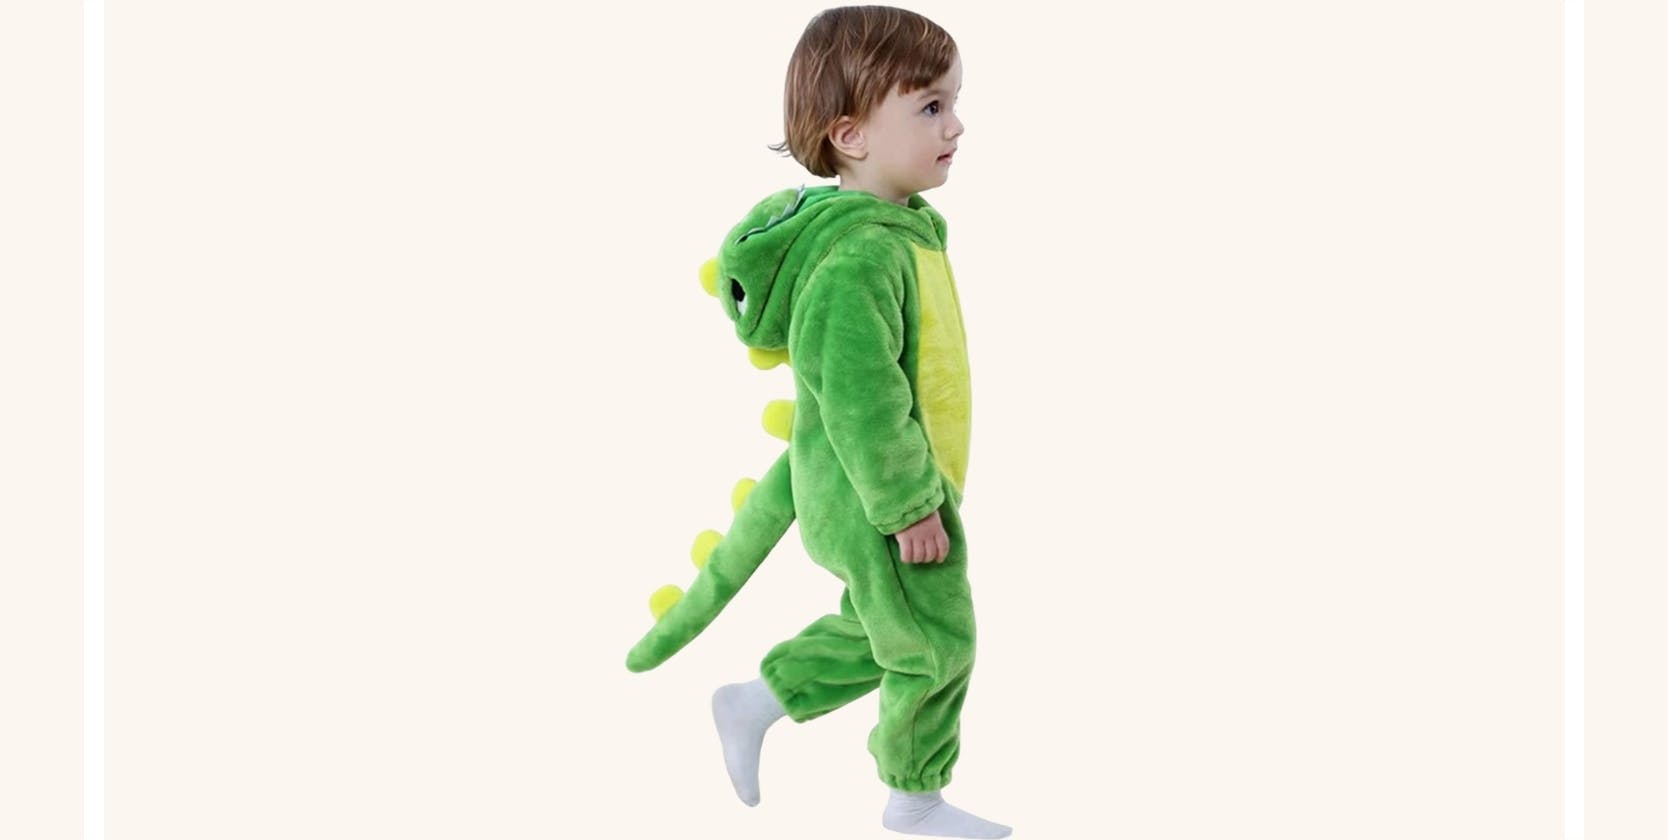 A boy in a dinosaur costume.